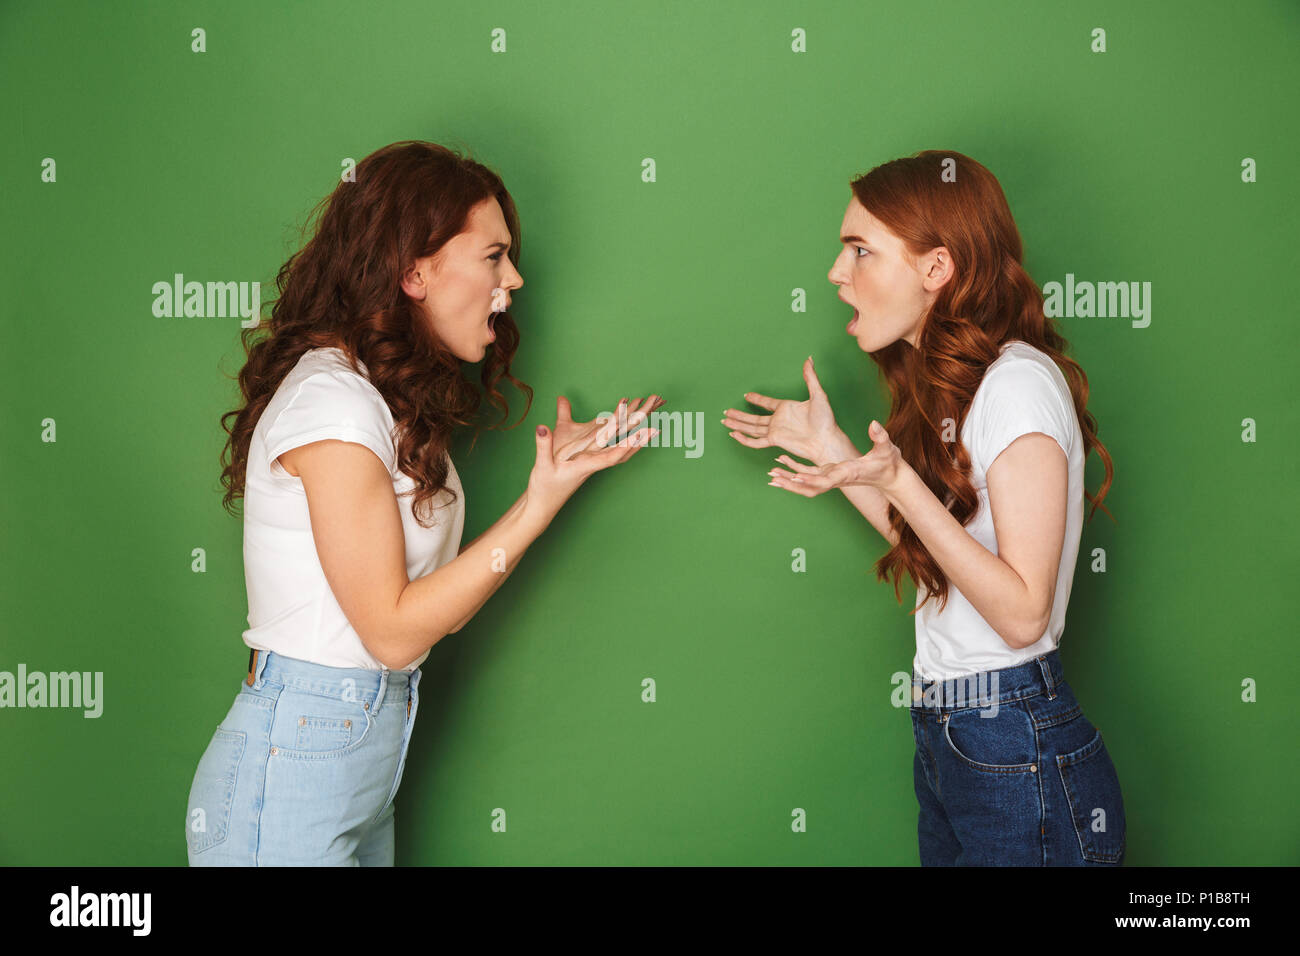 Deux filles indignés 20s avec ginger hair face croisés et criant à l'autre sur fond vert isolé Banque D'Images